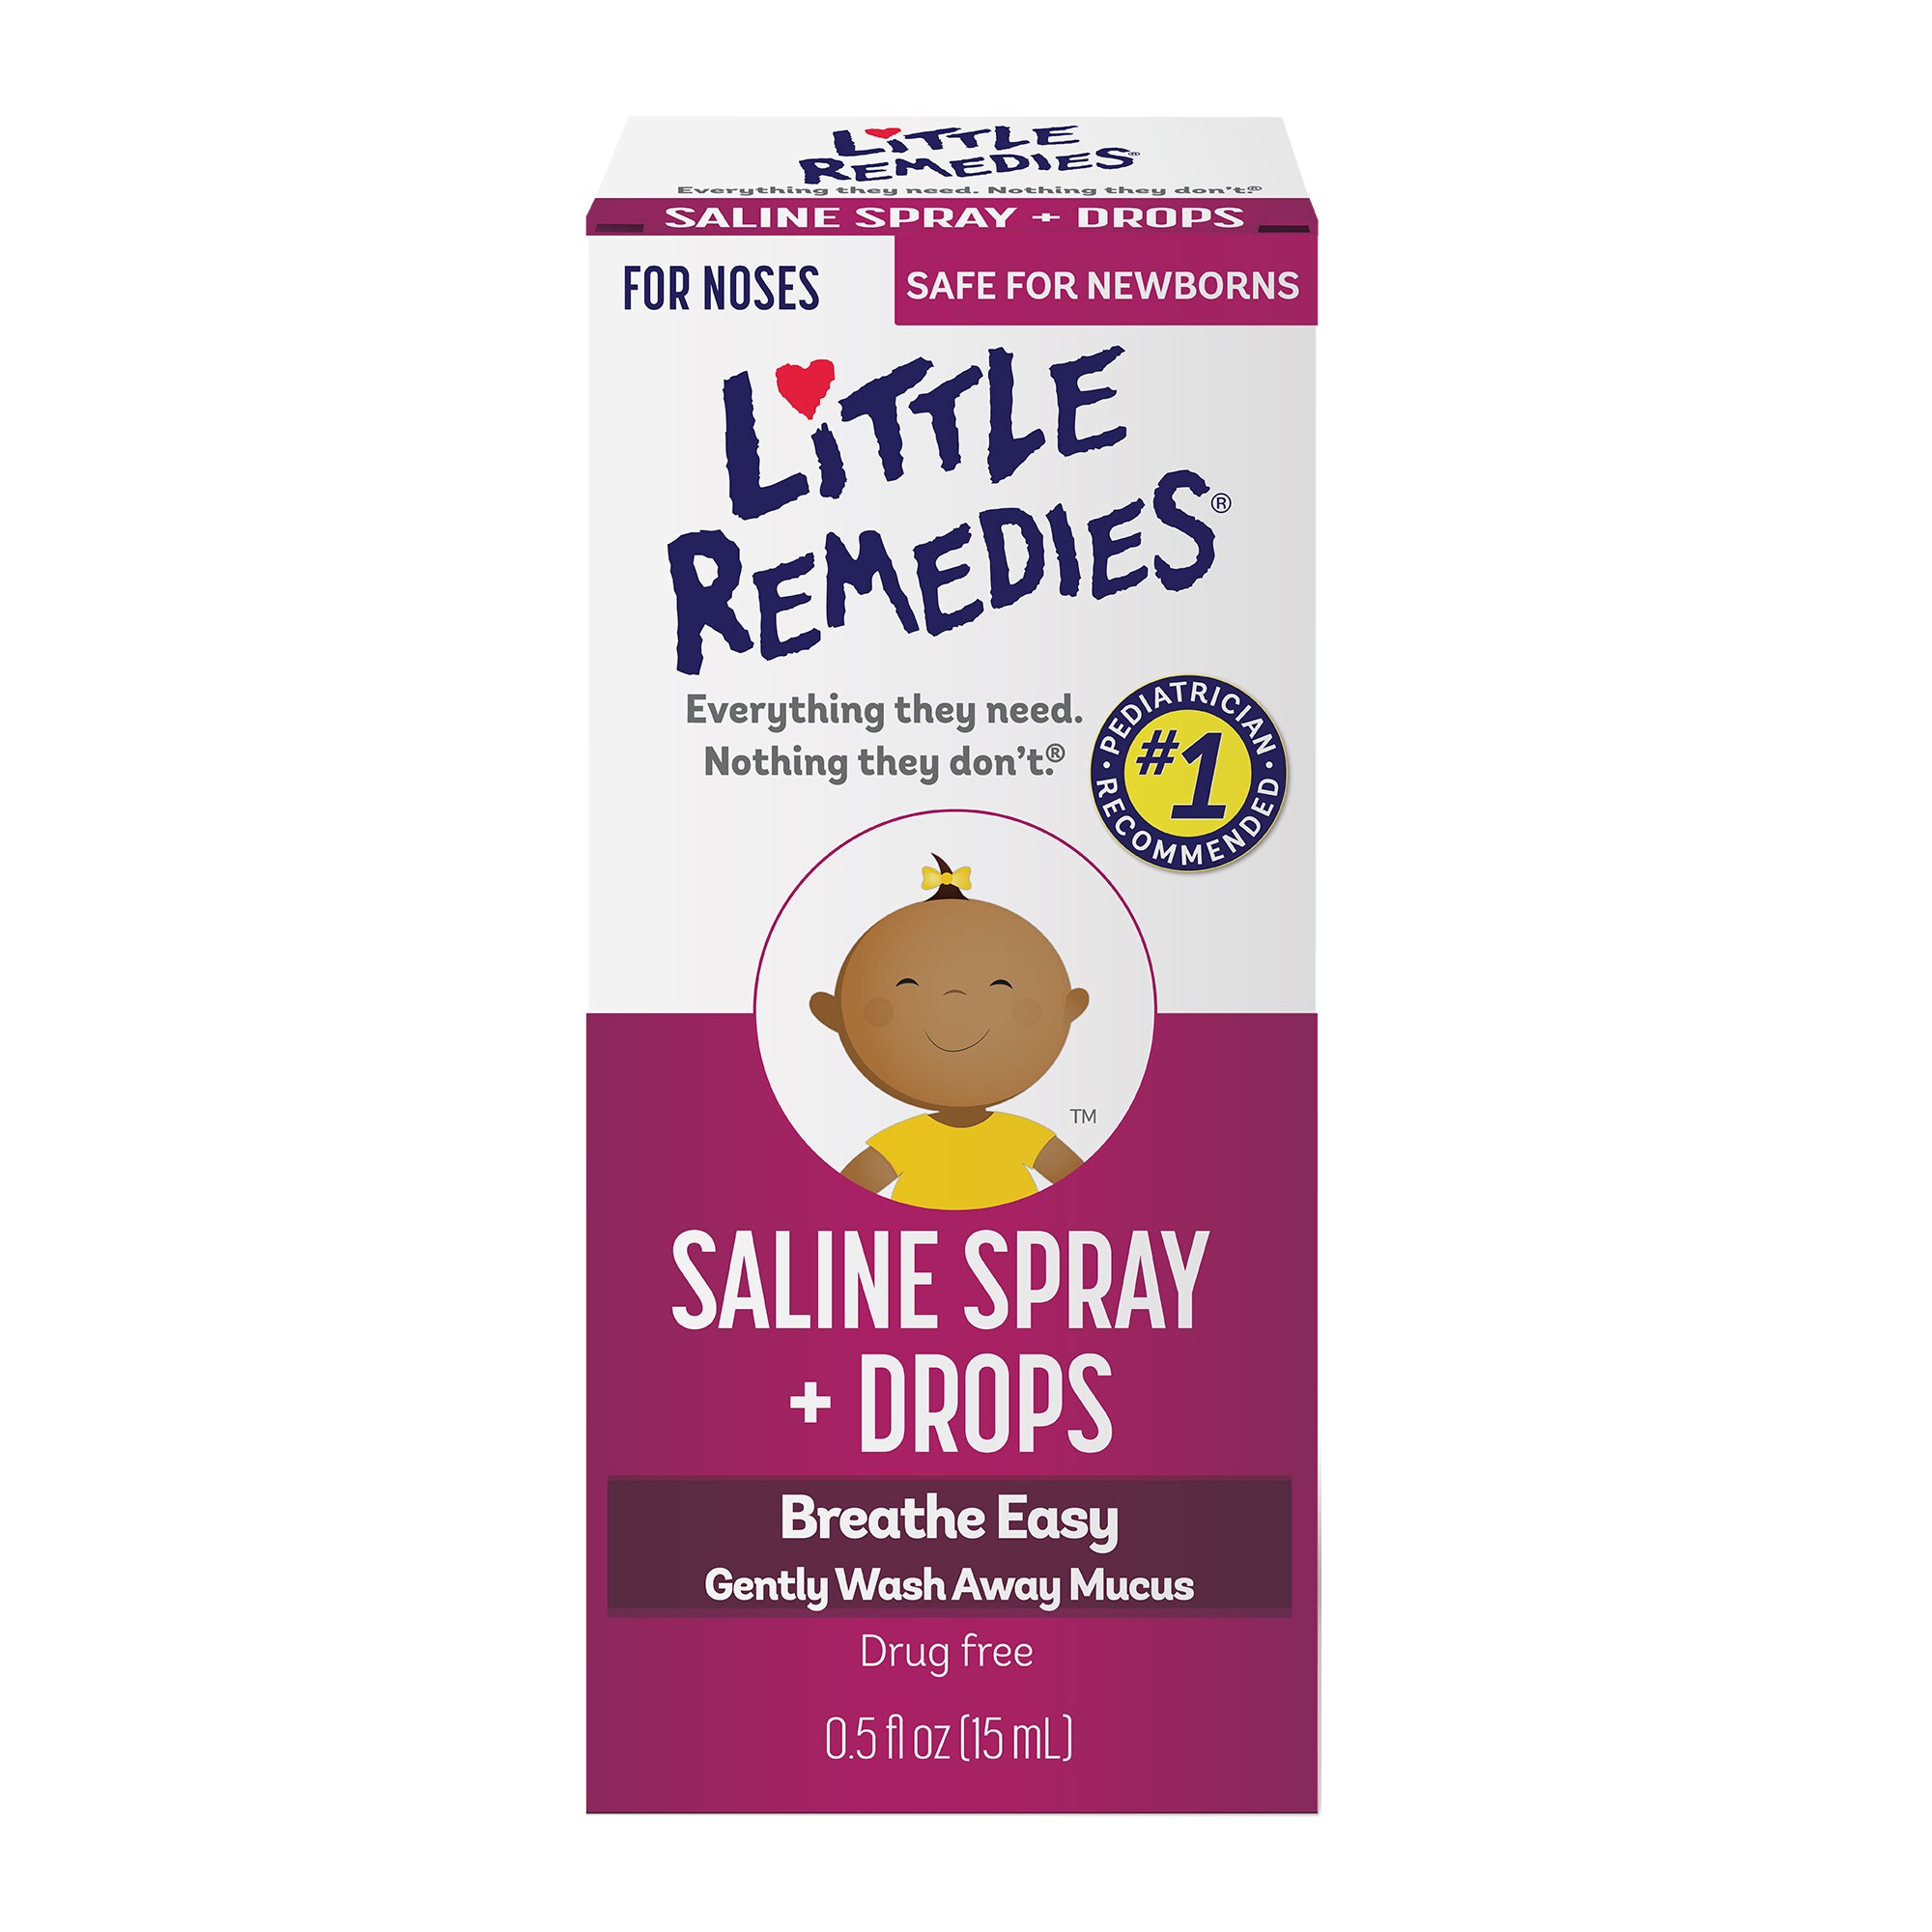 Little Remedies - Solución salina en spray y gotas, apto para recién nacidos